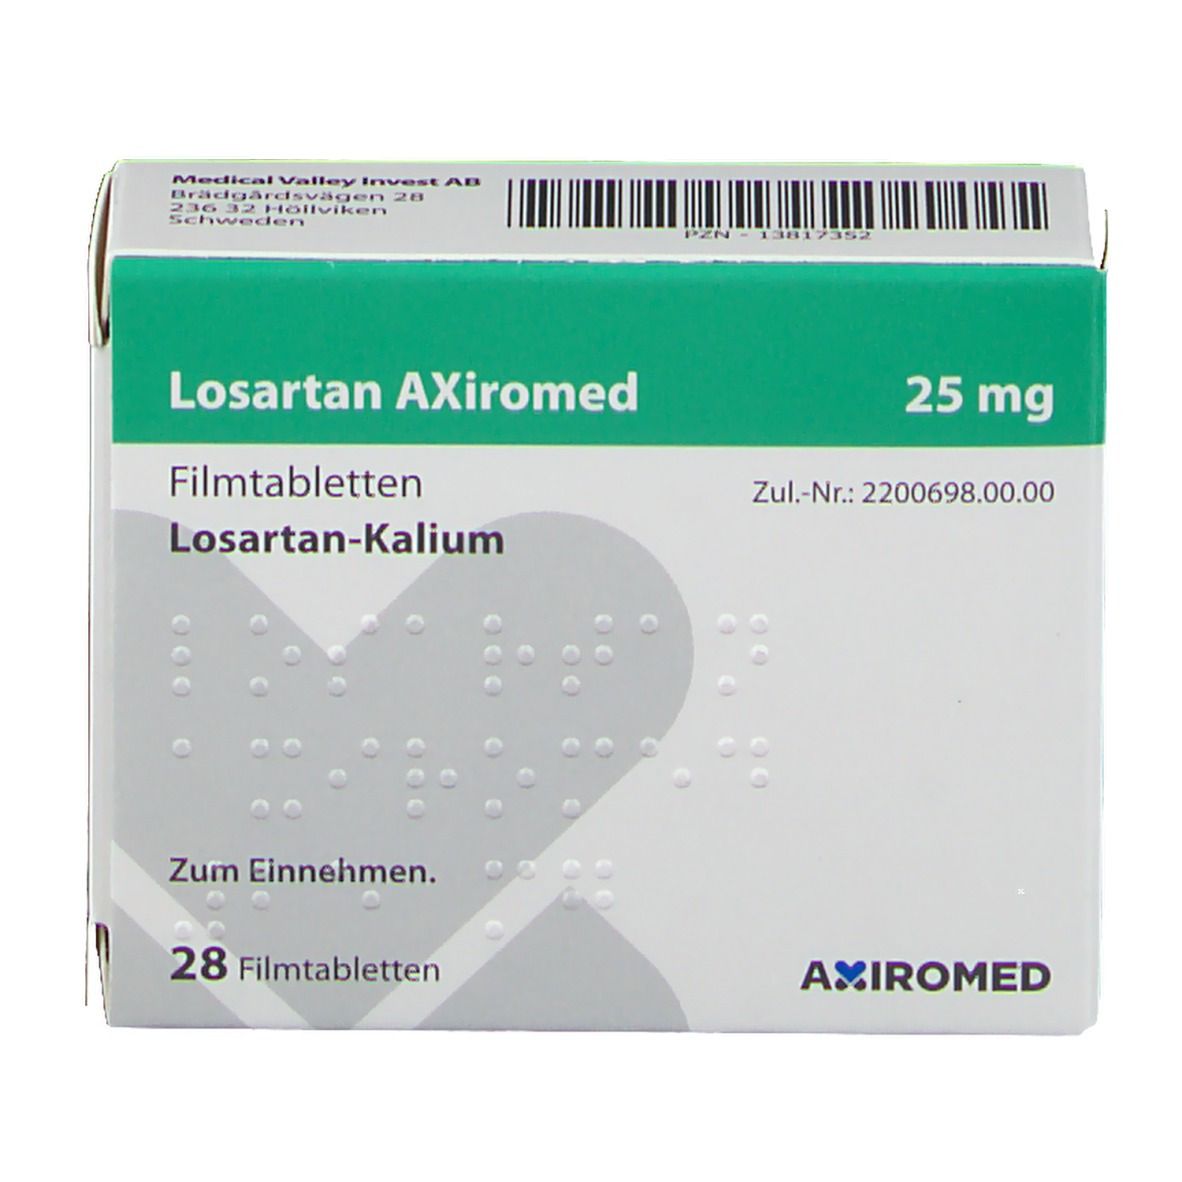 Losartan AXiromed 25 mg